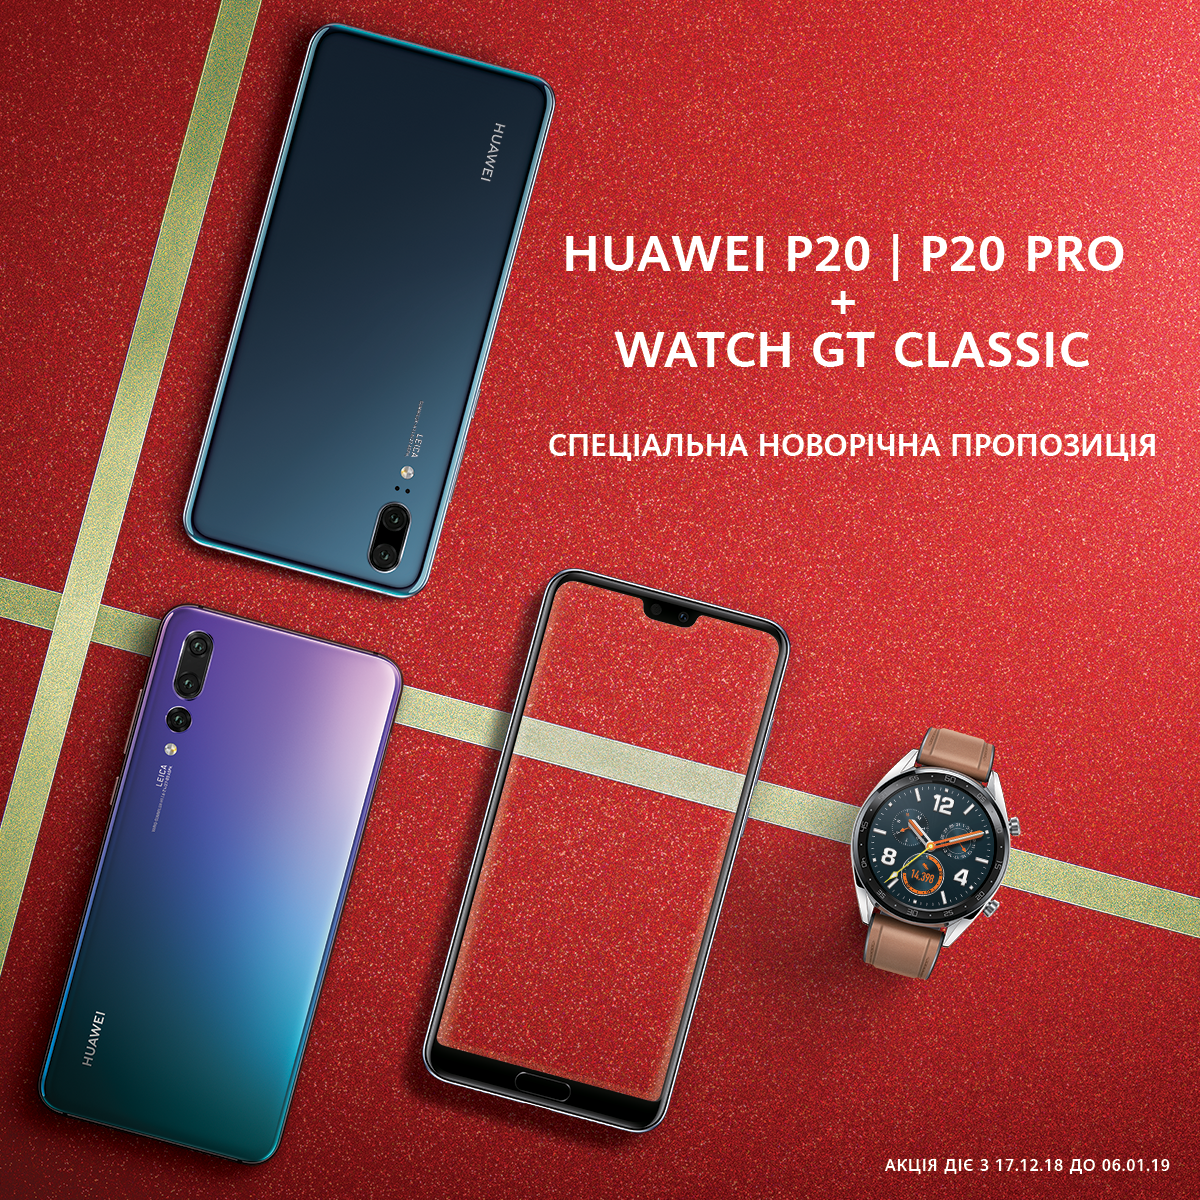 Huawei P 20 и Huawei P 20 Pro